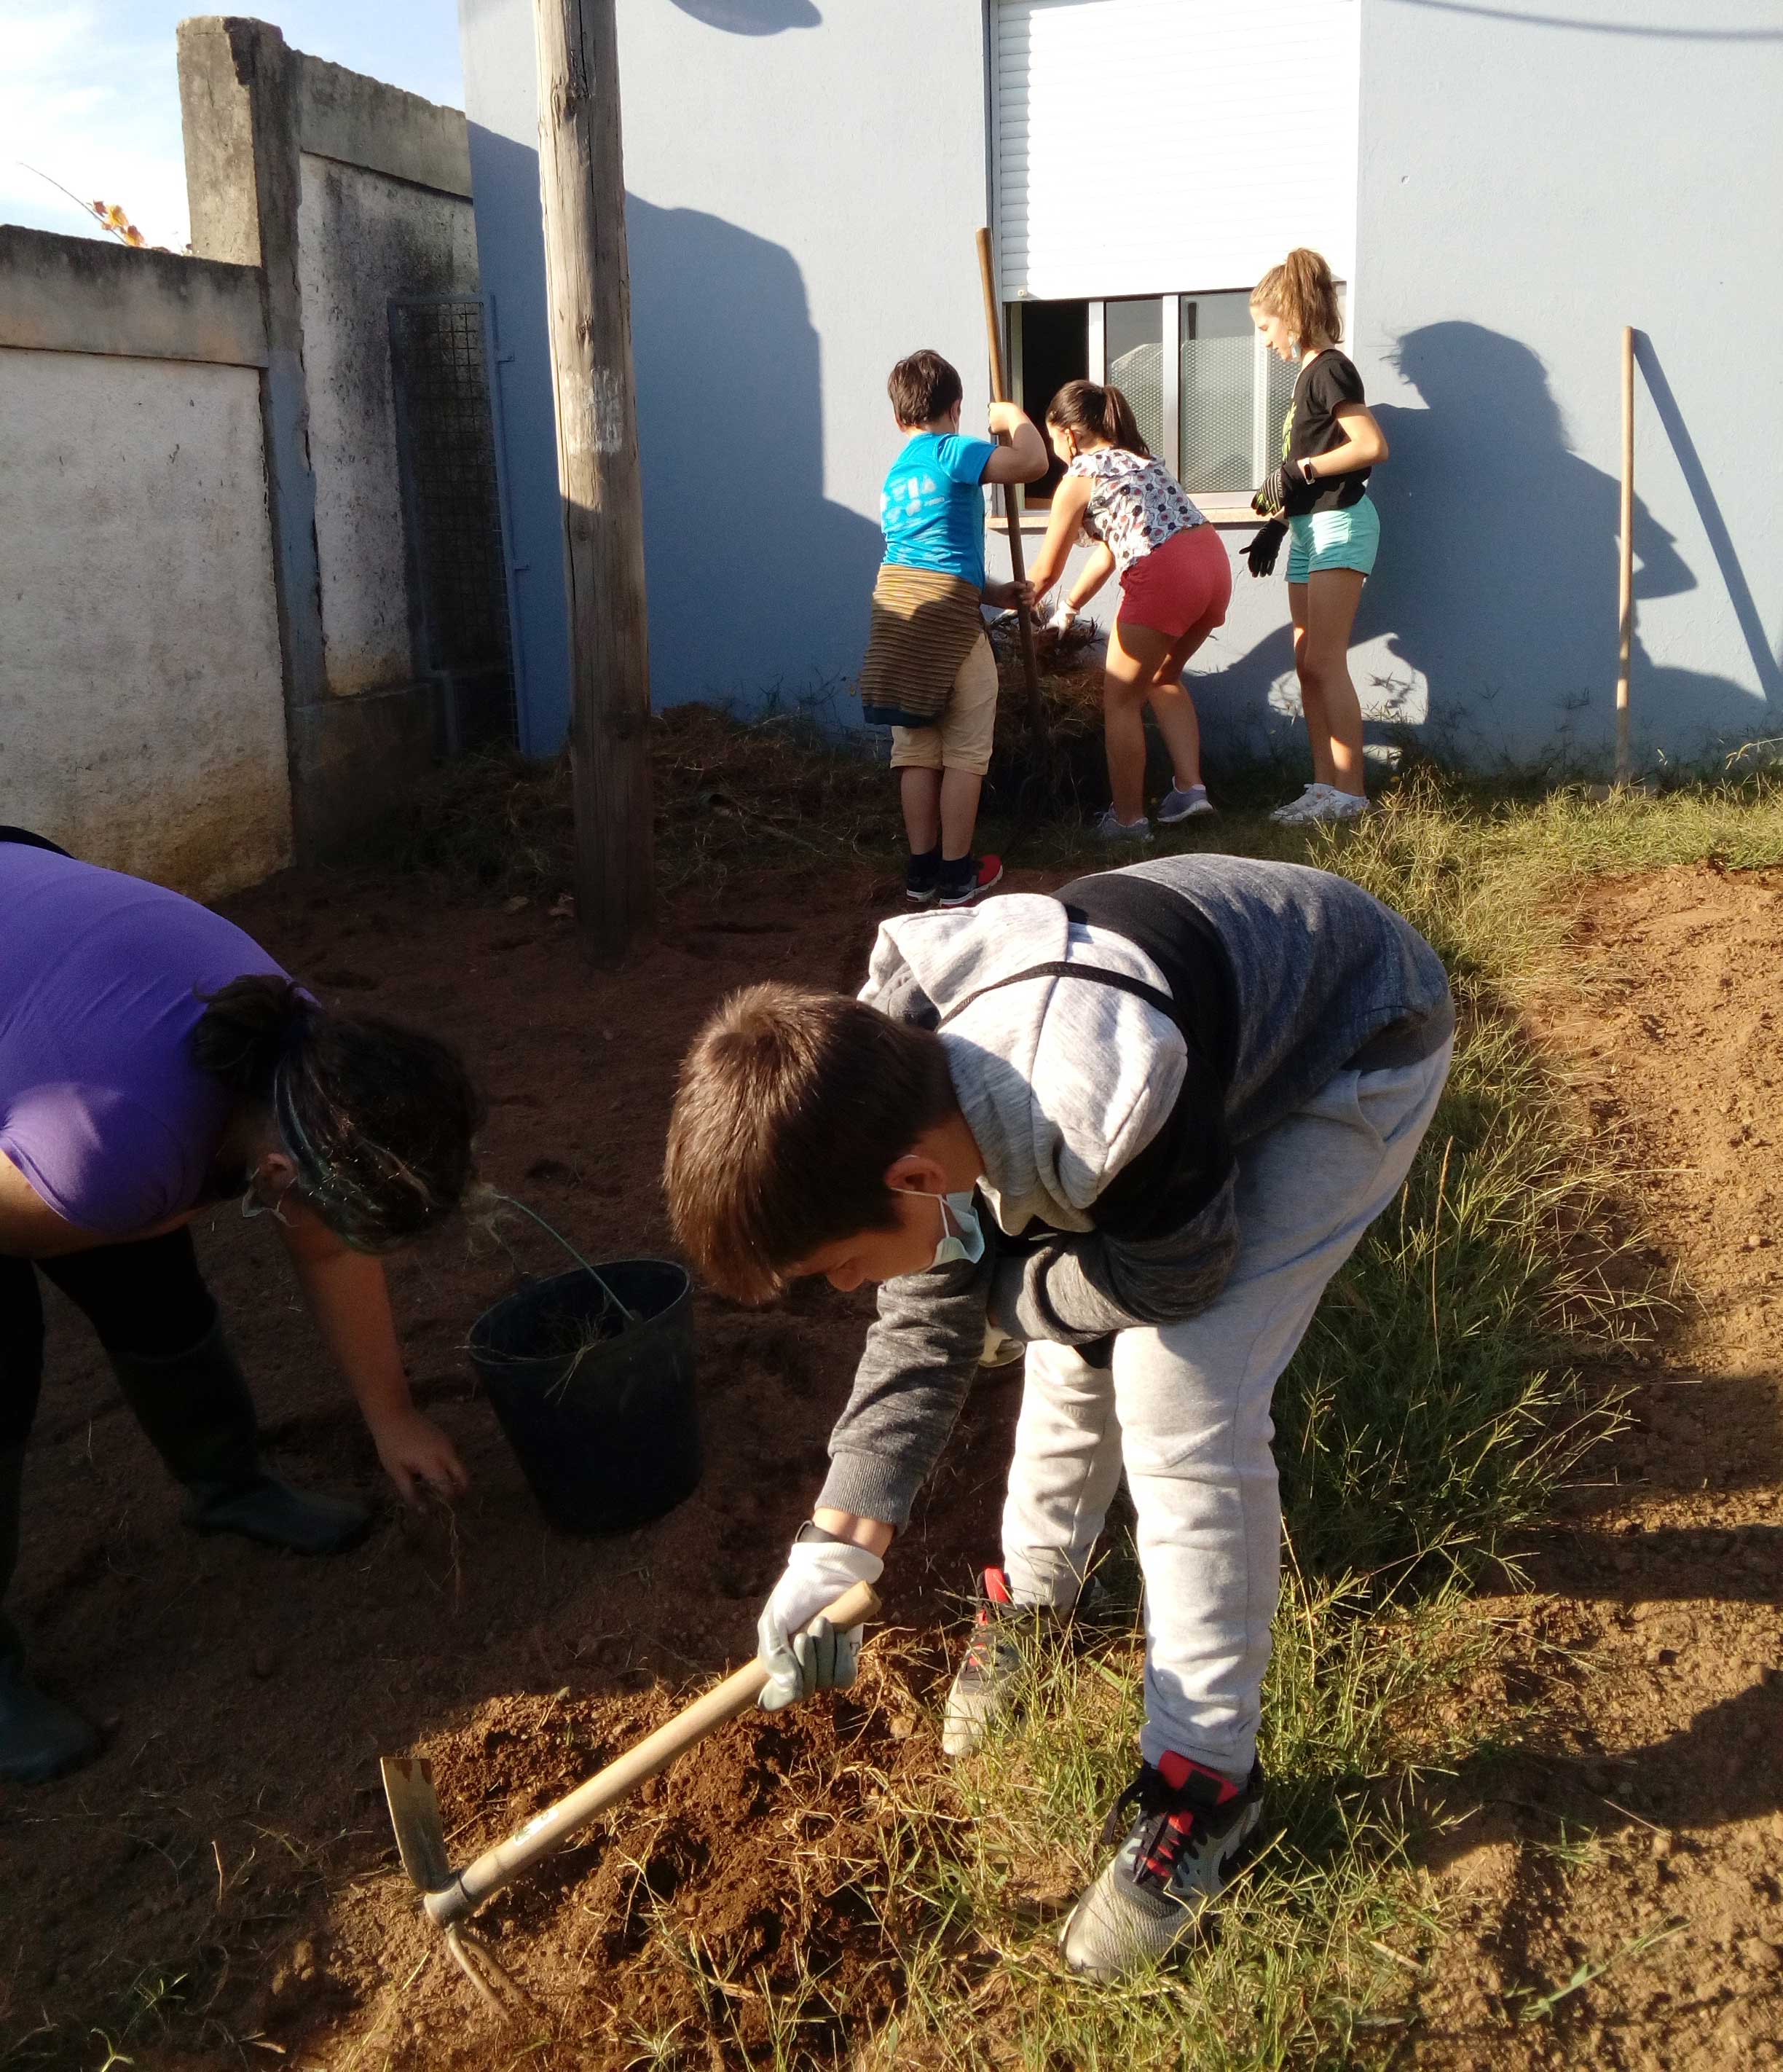 Limpeza do terreno - horta exterior 2. Os alunos fazem a preparação do terreno para a horta exterior.